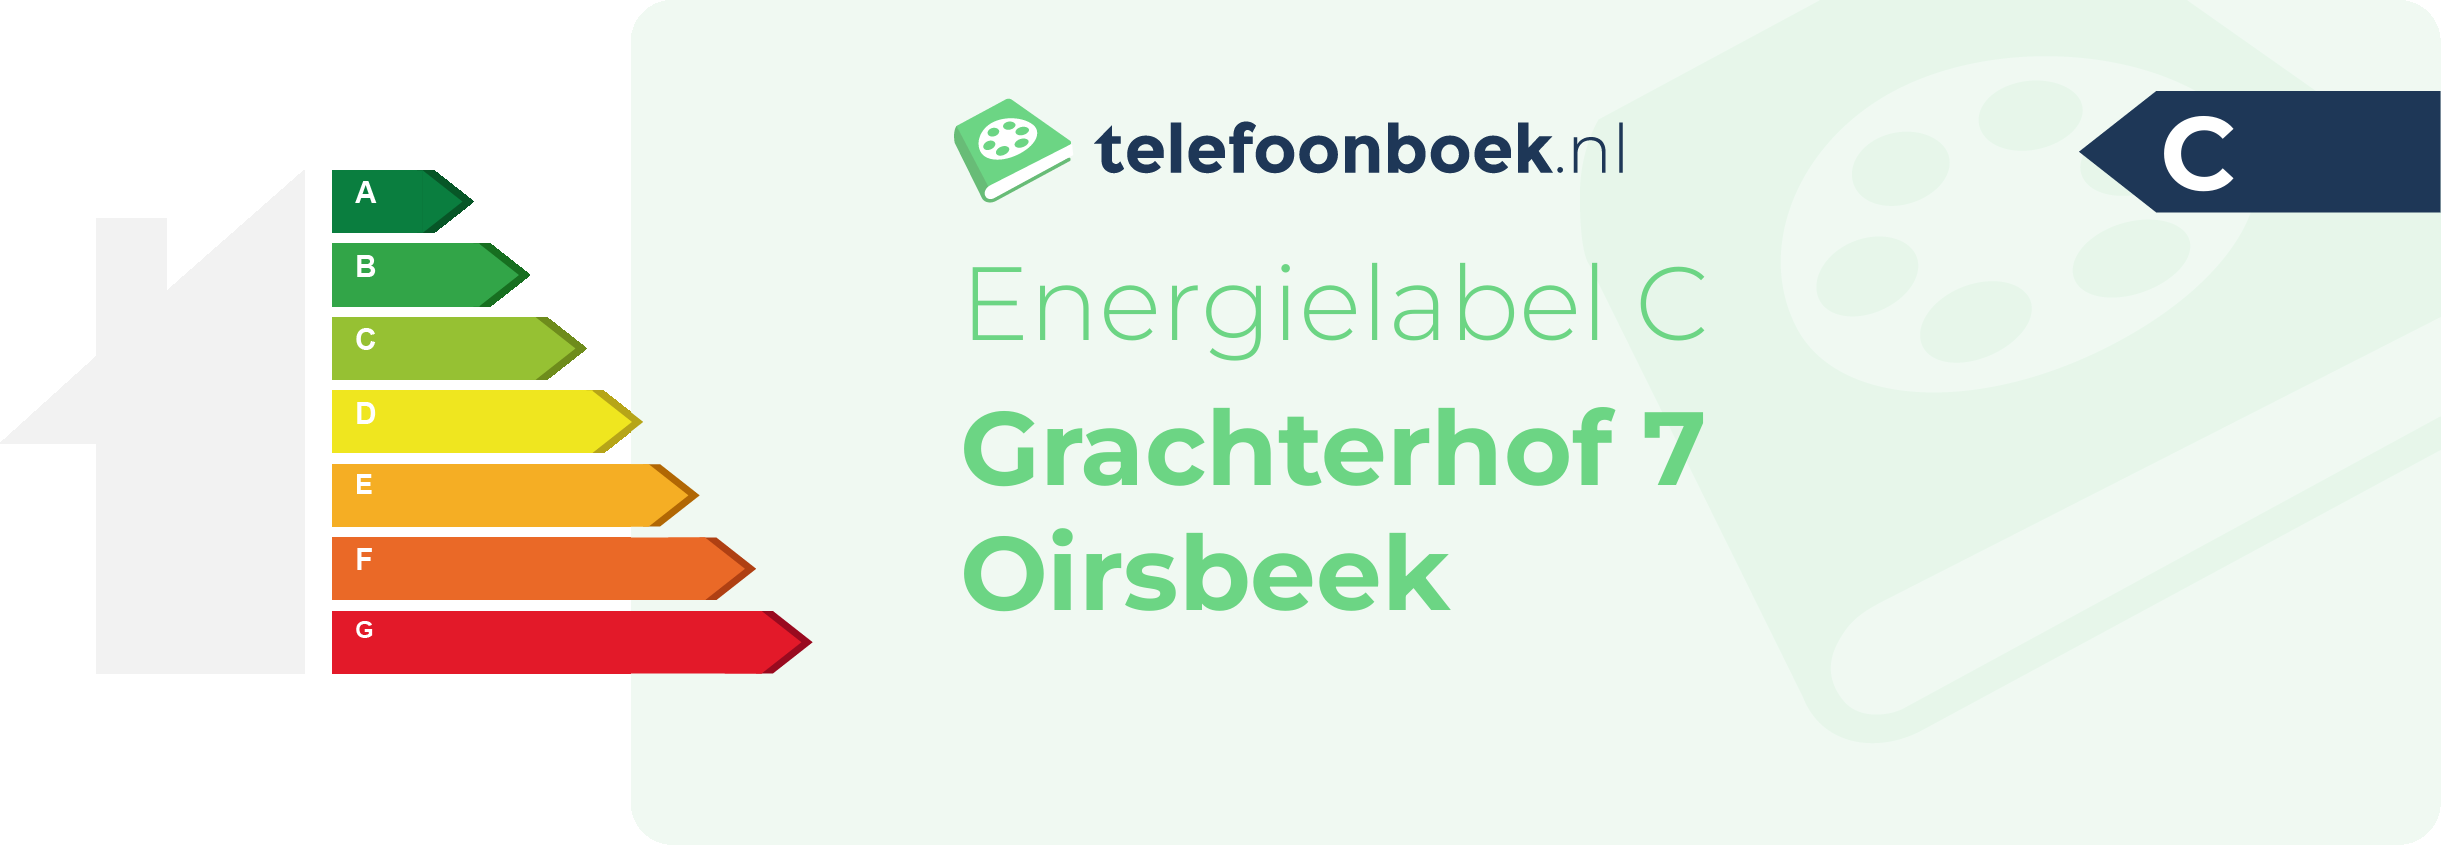 Energielabel Grachterhof 7 Oirsbeek